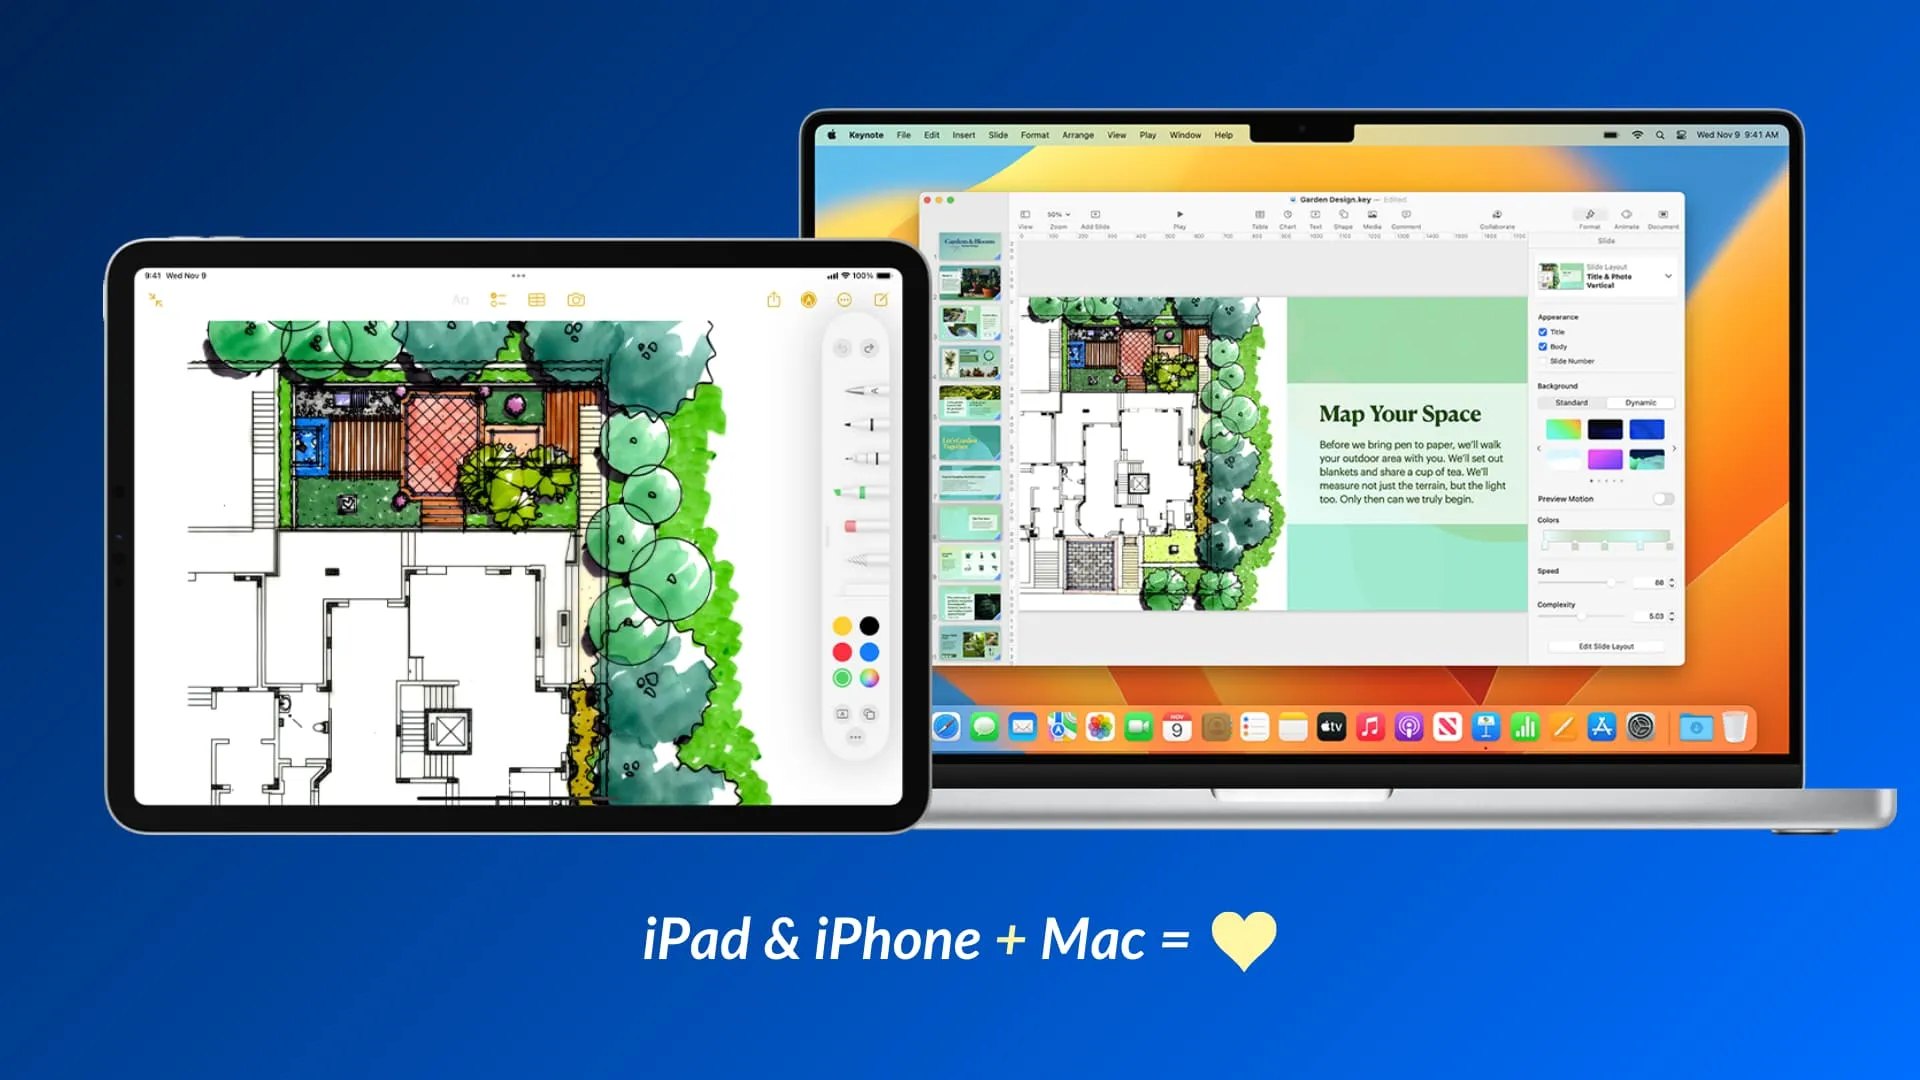 iPadin ja Macin käyttäminen yhdessä mahtavien asioiden tekemiseen